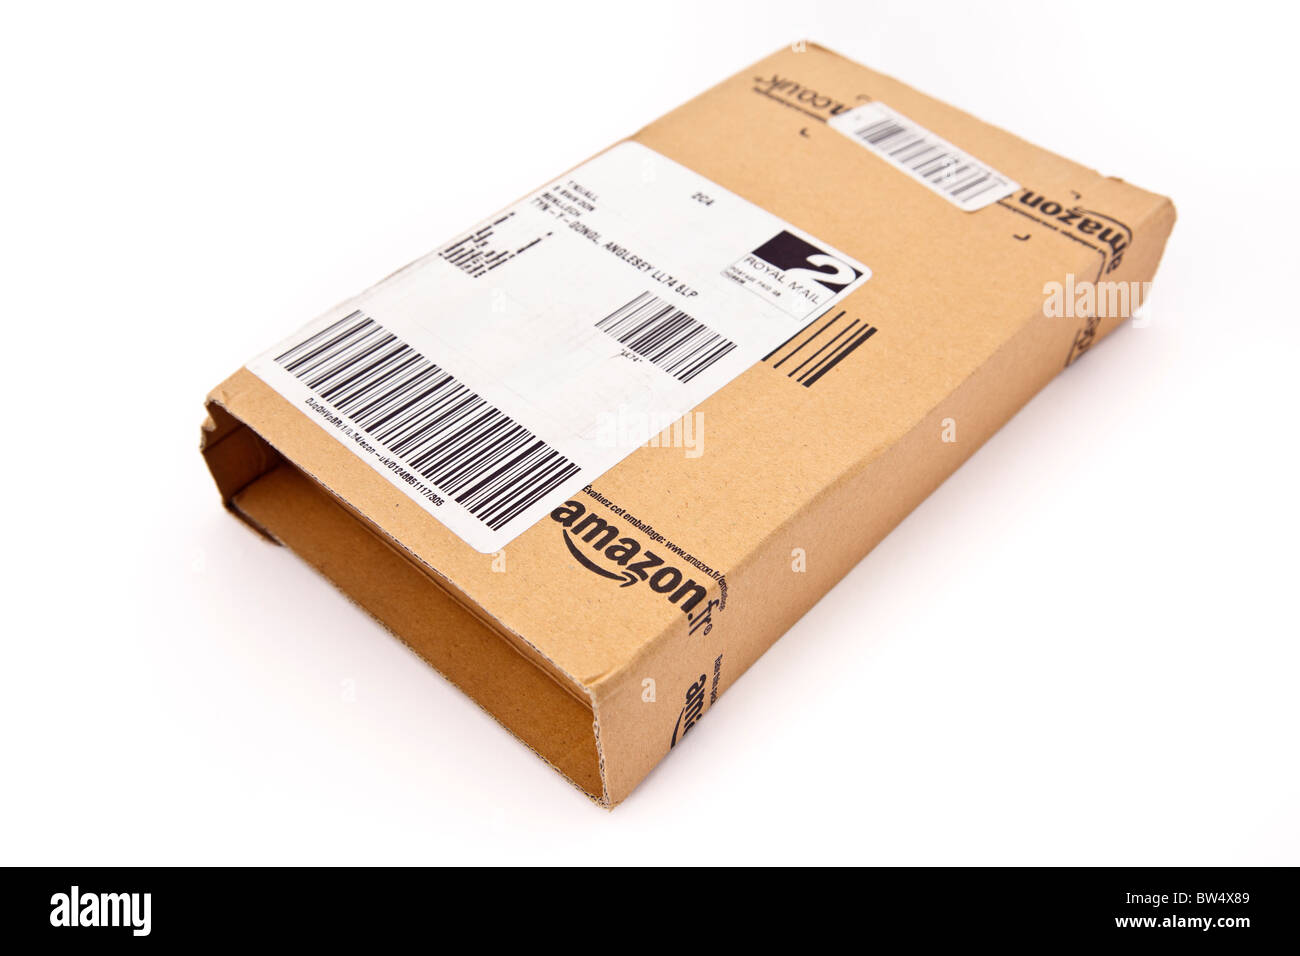 Product besteld via Amazon.de, alleen verpakking ontvangen - Shopping forum  - GoT